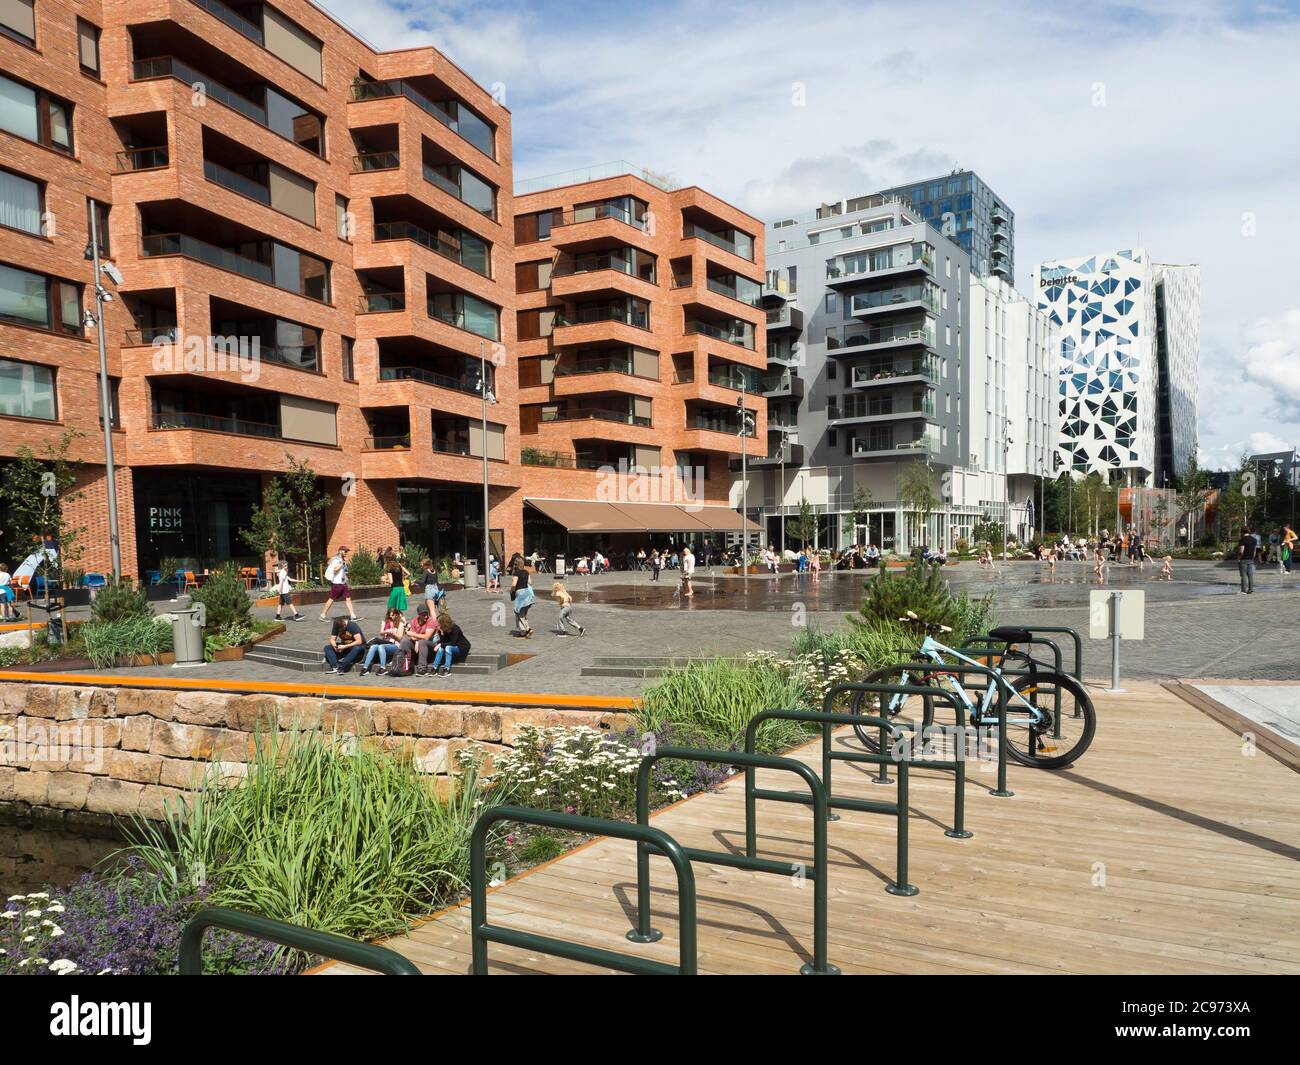 En Bjorvika Oslo Noruega se está añadiendo una nueva capa de edificios directamente en los bloques de fiordos, negocios y apartamentos combinados con nuevos espacios públicos Foto de stock